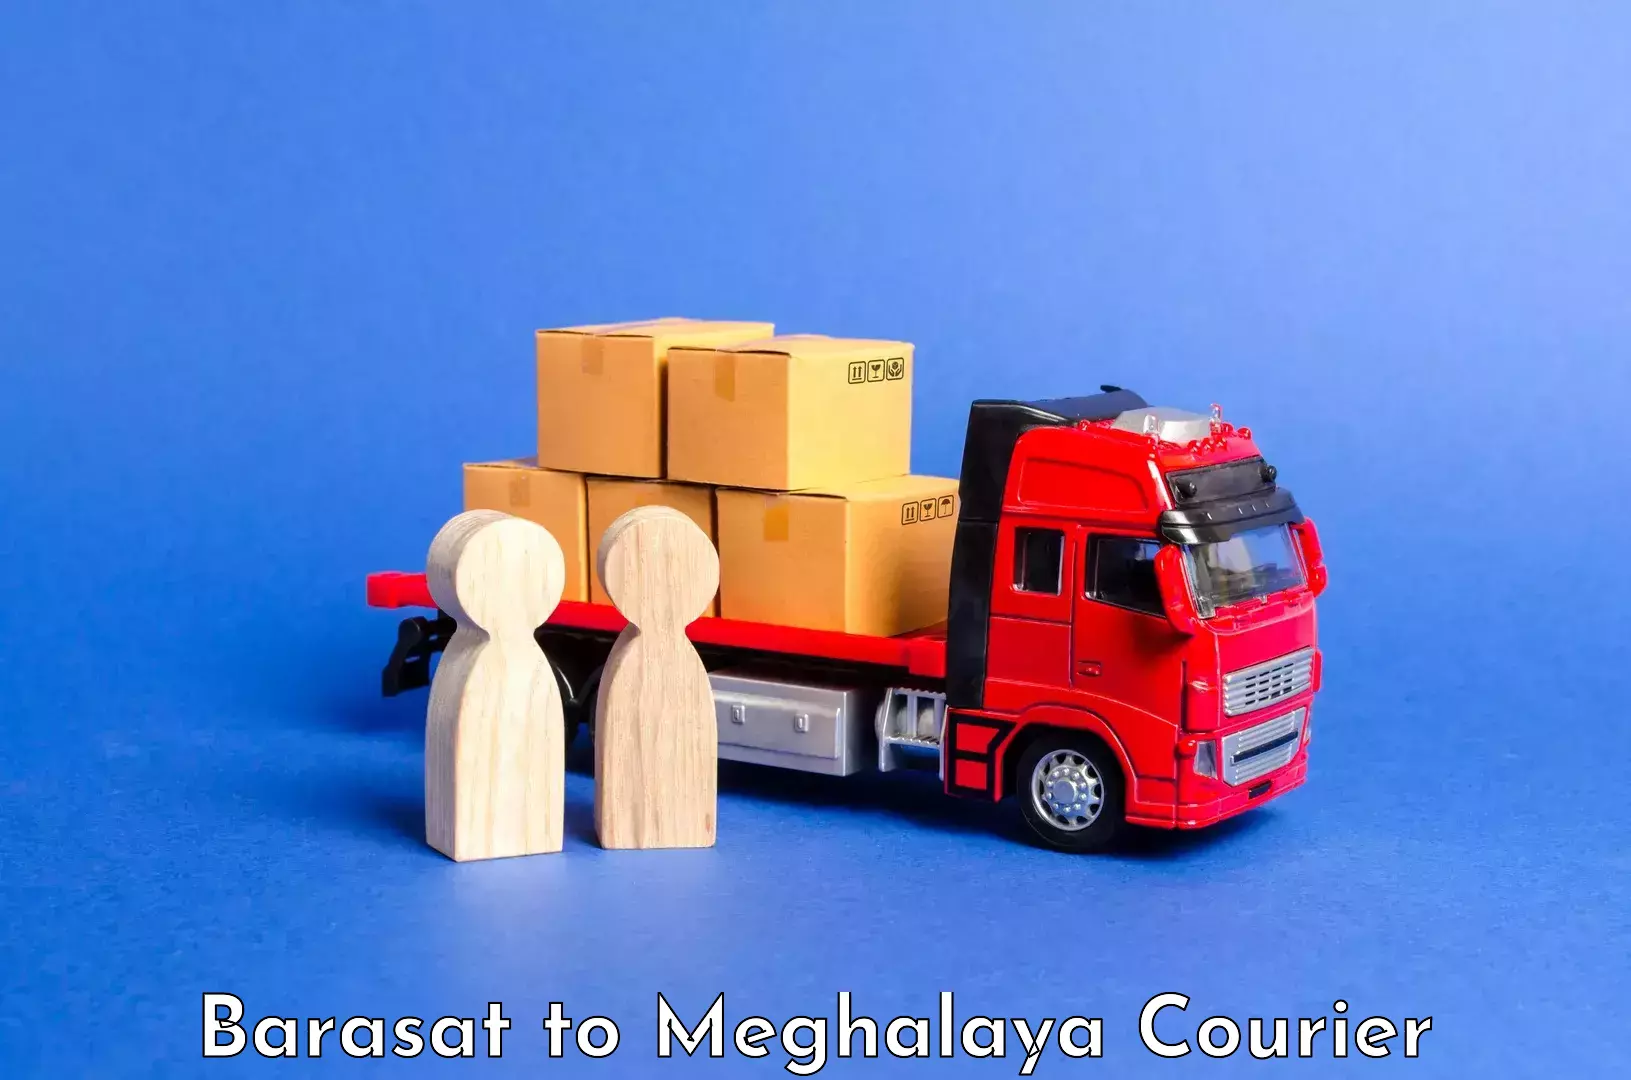 Baggage transport management Barasat to Meghalaya